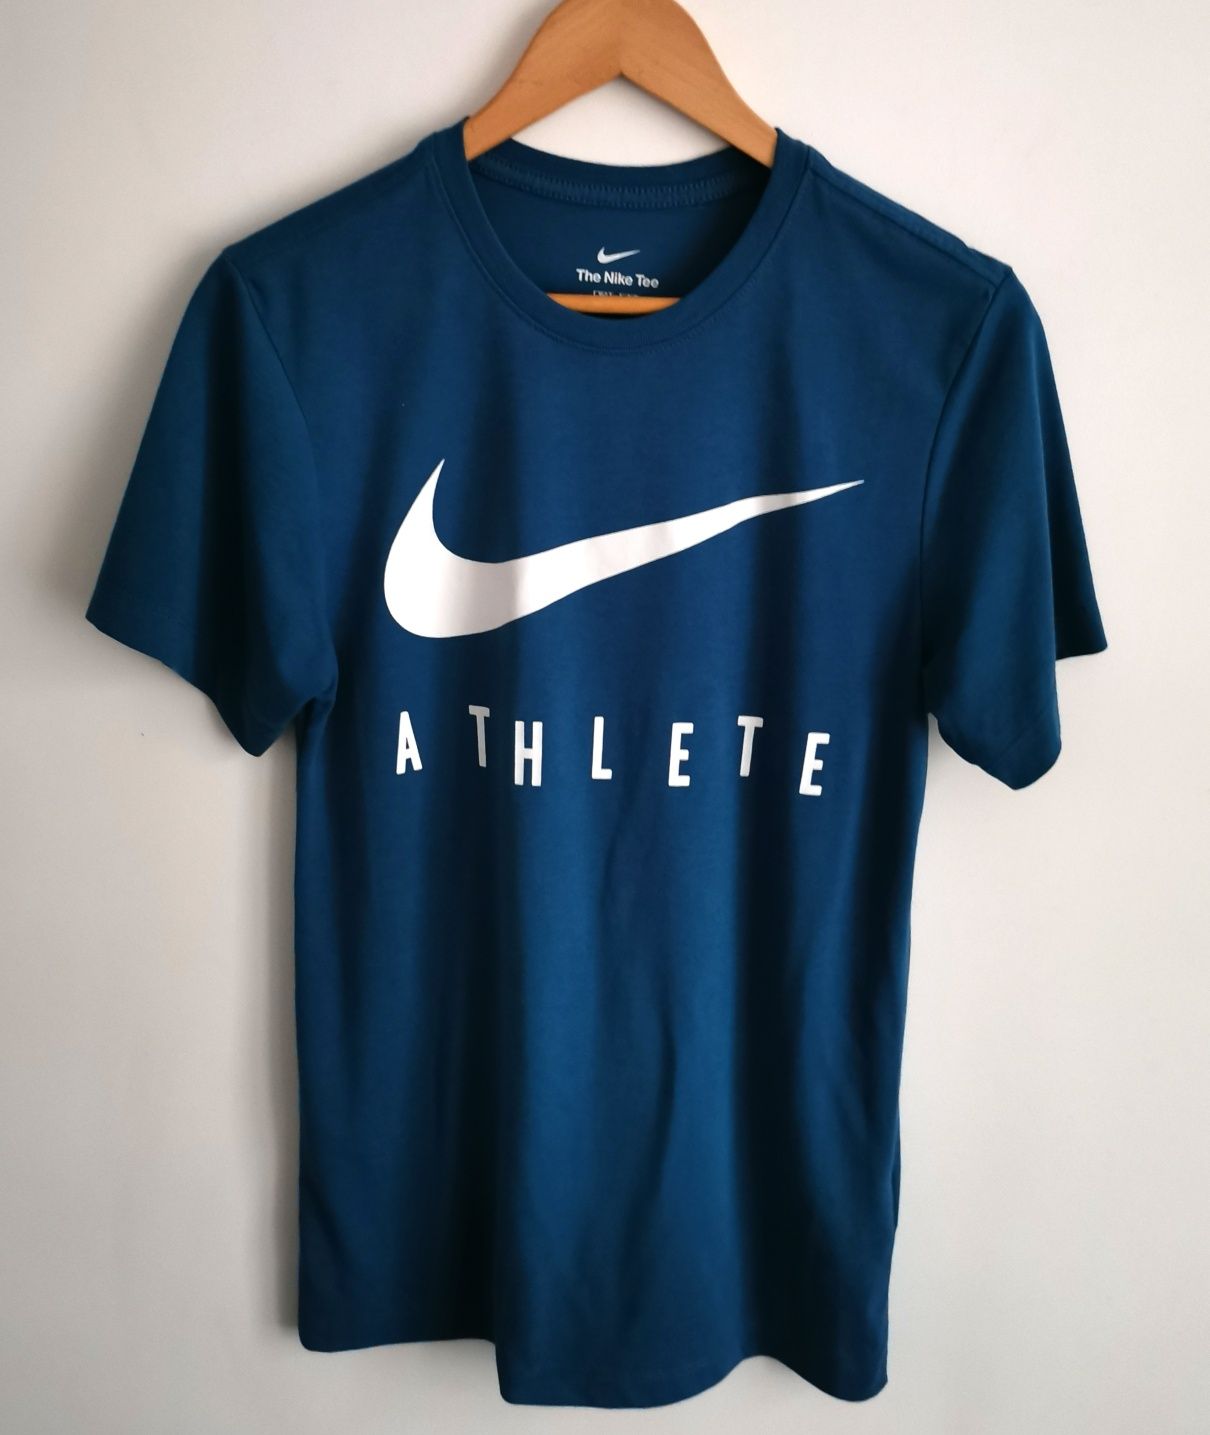 Nike Athlete t-shirt koszulka krótki rękaw sportowa logowana XS/S